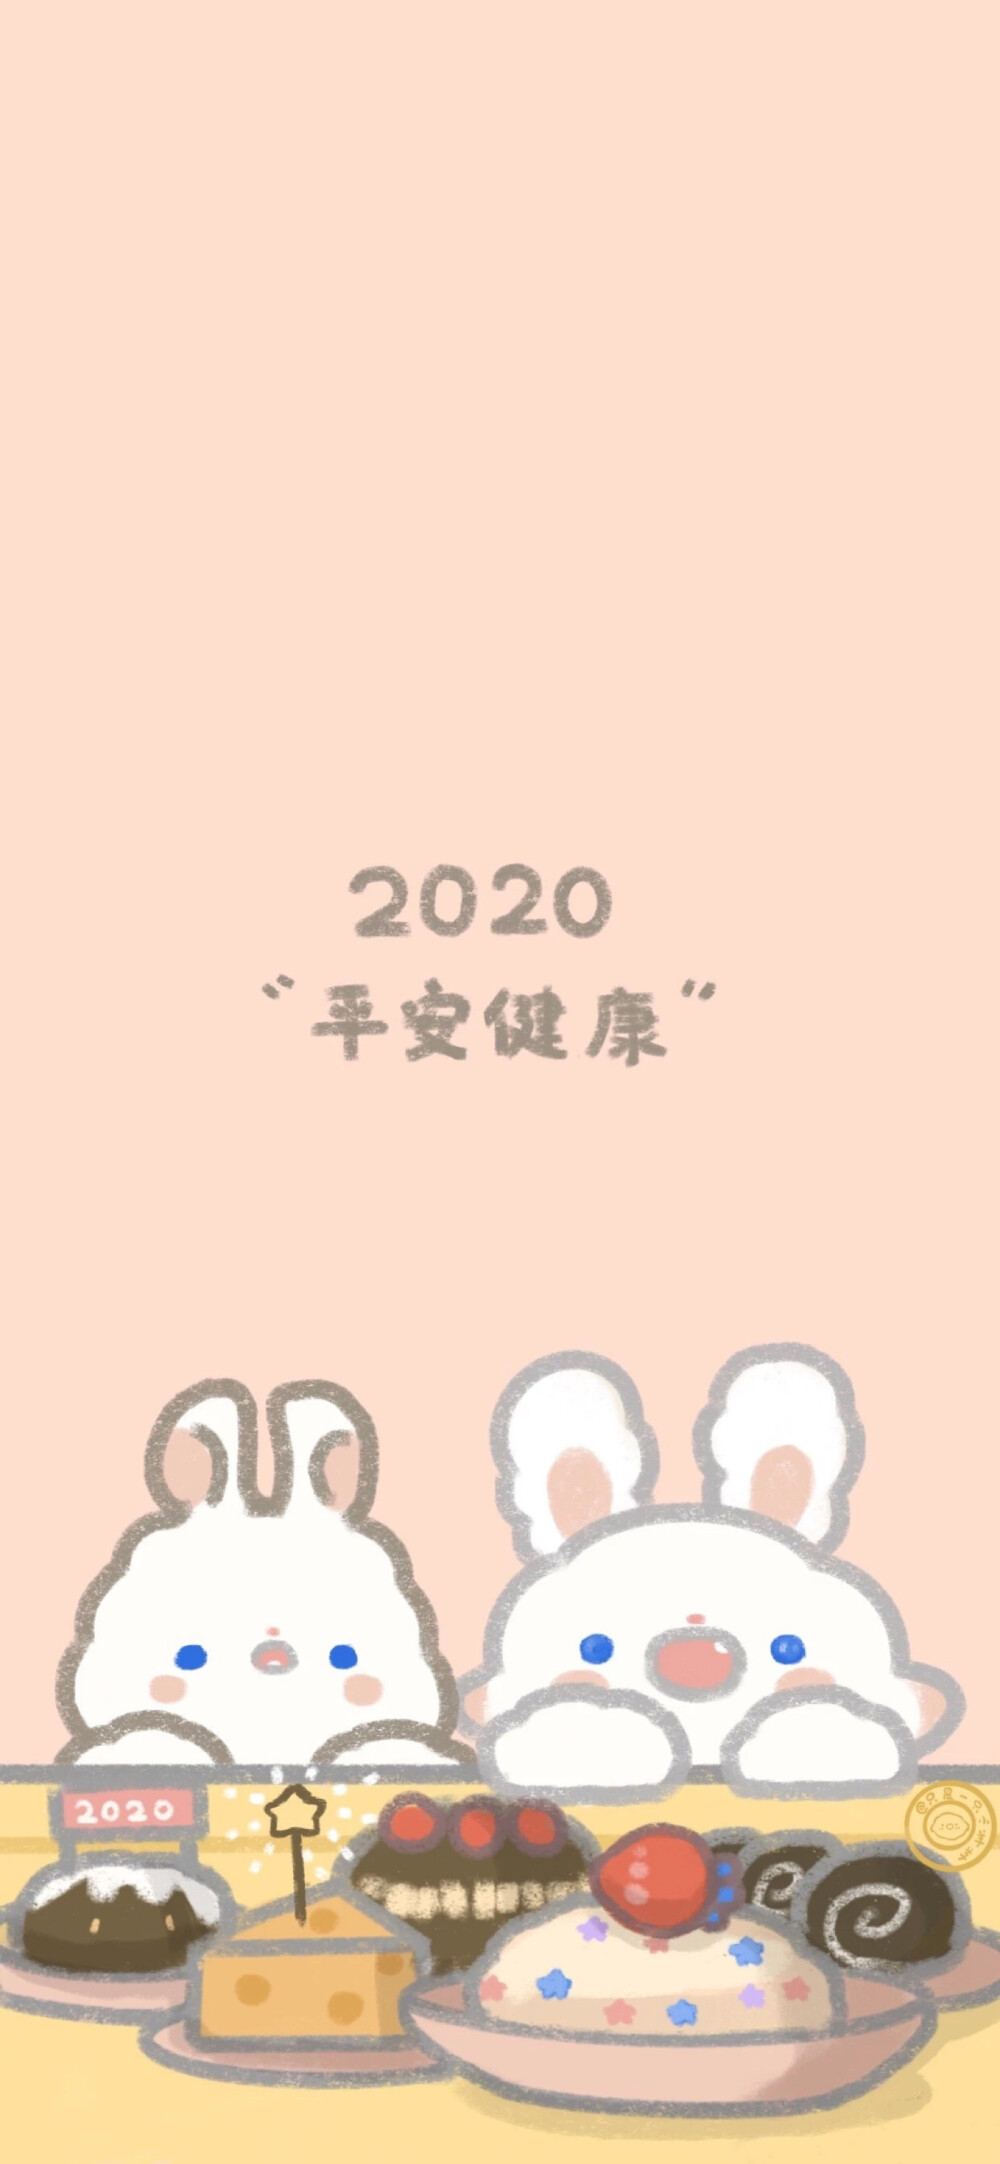 "2020 平安喜乐" 可爱壁纸